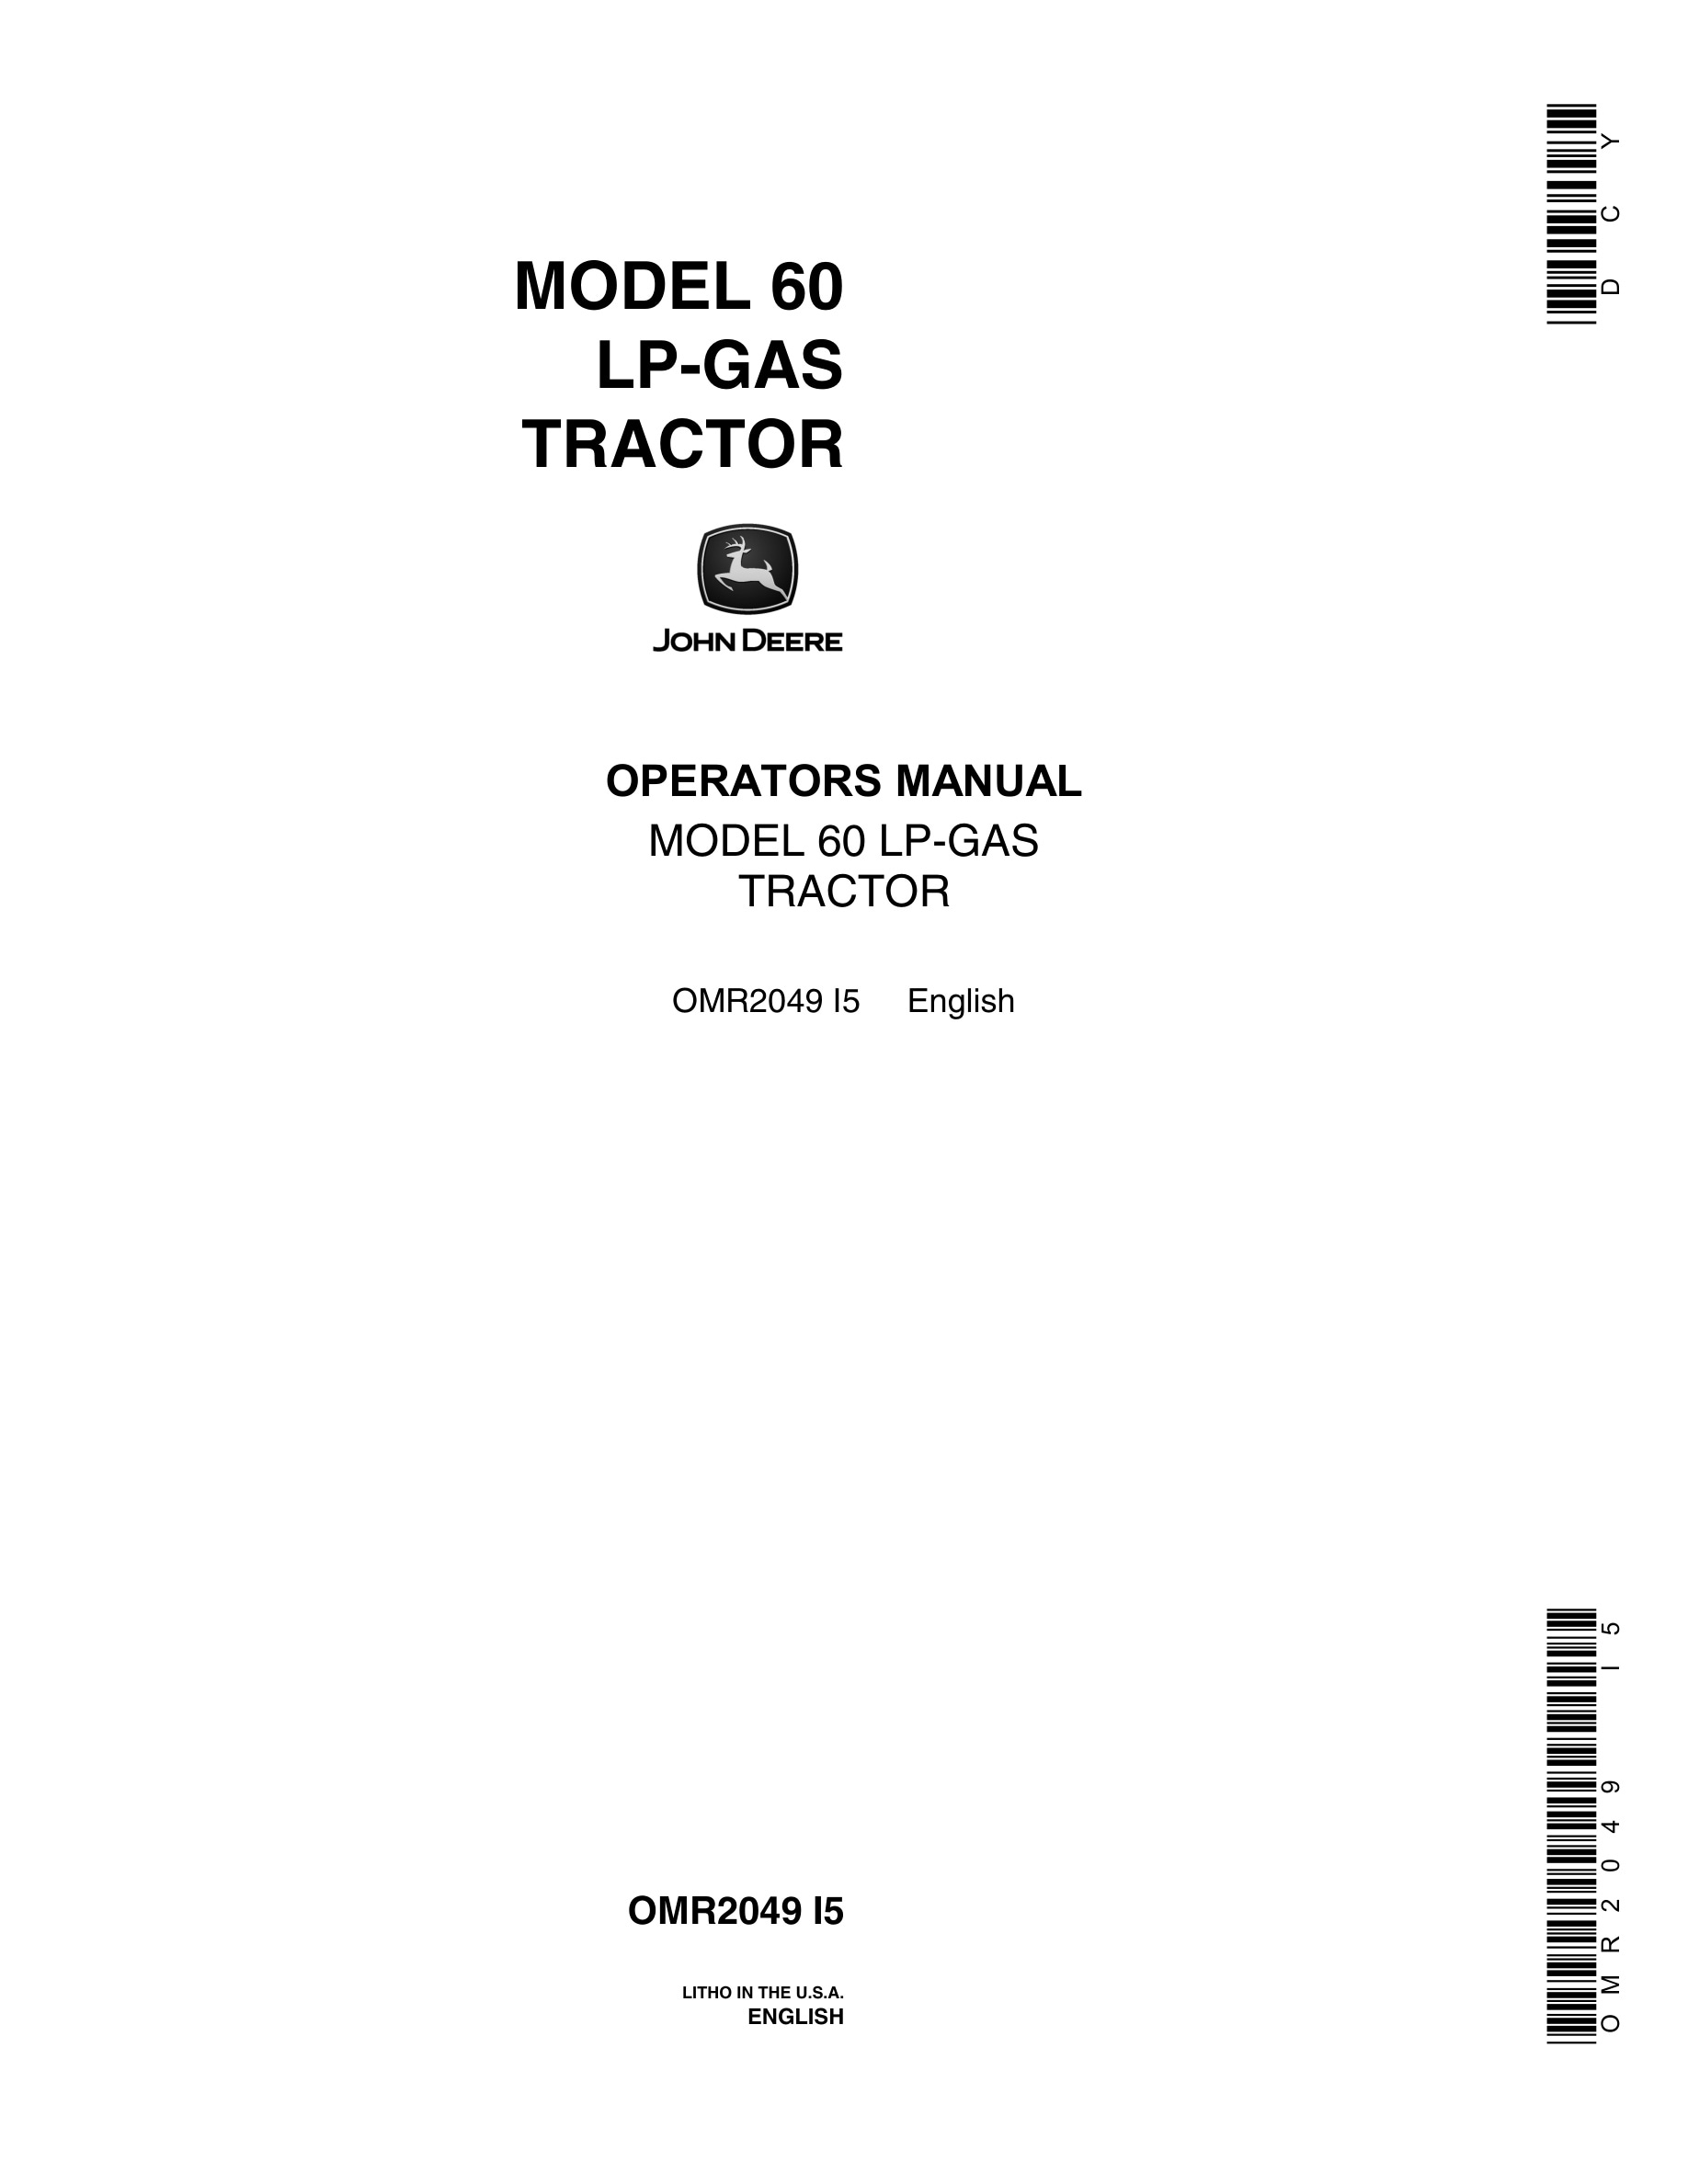 John Deere Model 60 Tractor Operator Manual OMR2049-1